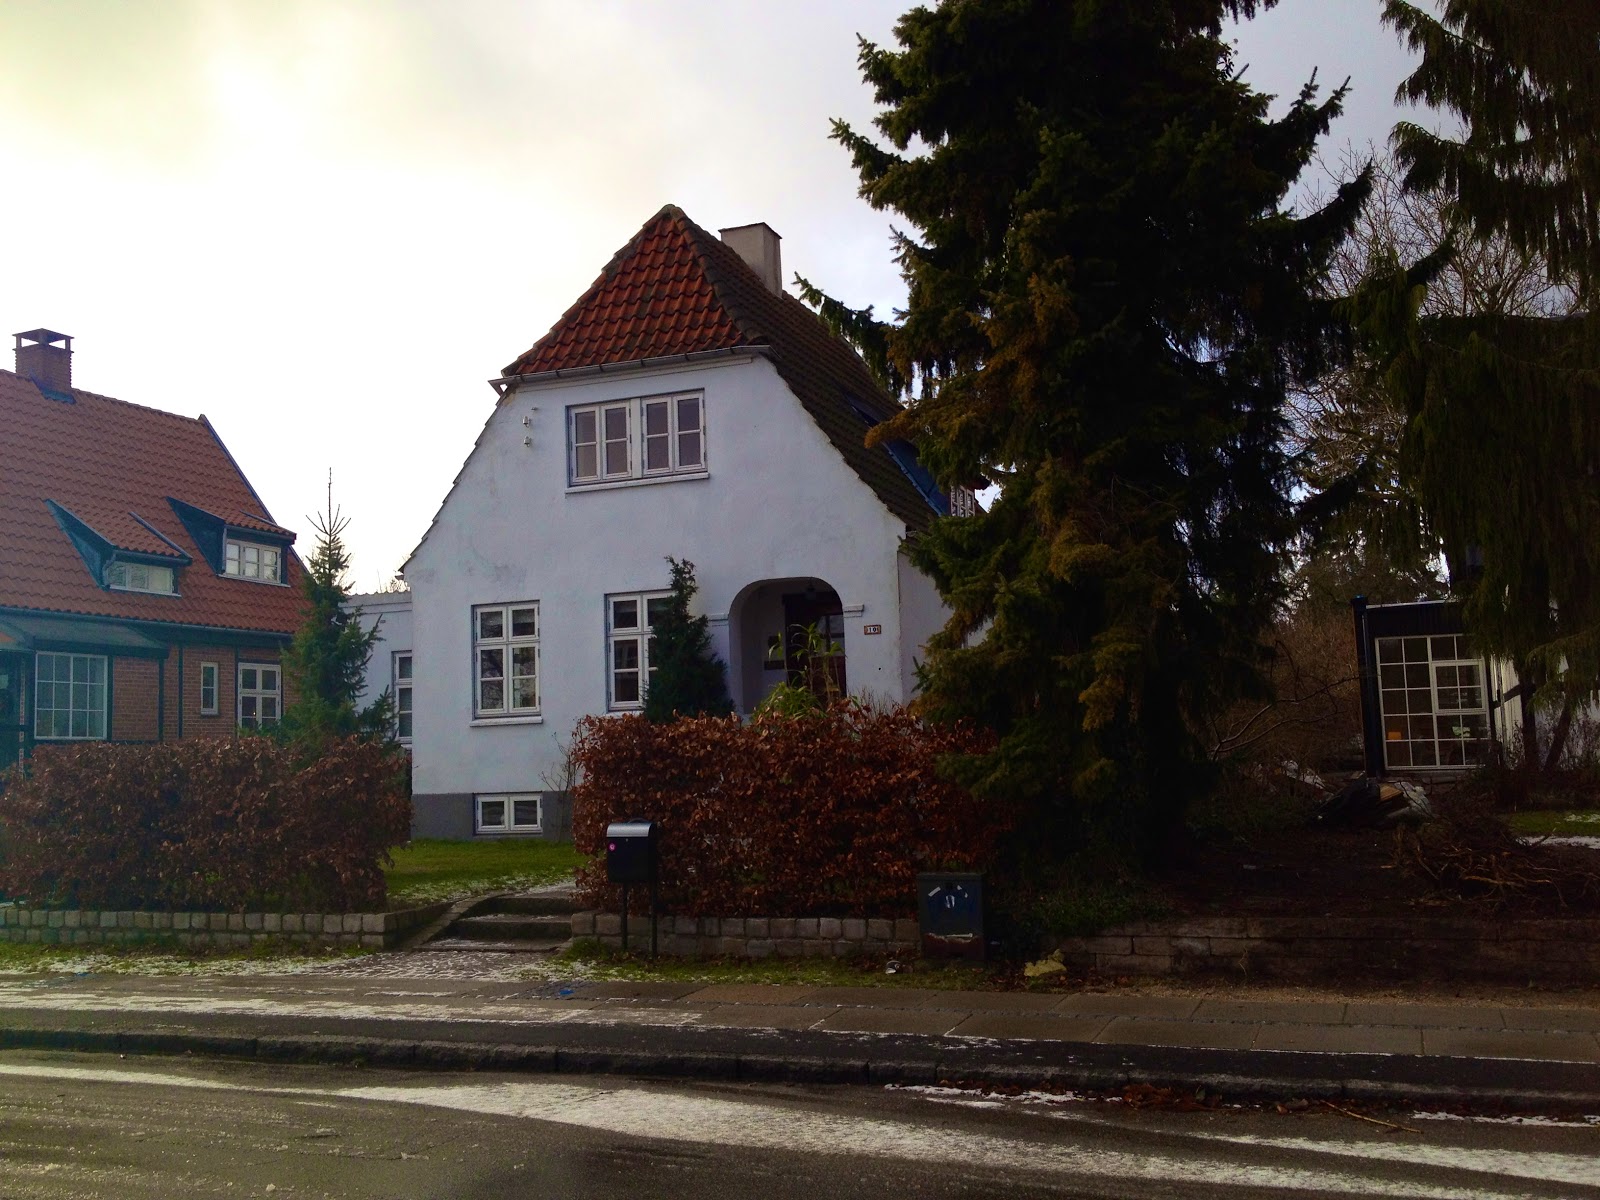 the little Søborg: family life neighborhood